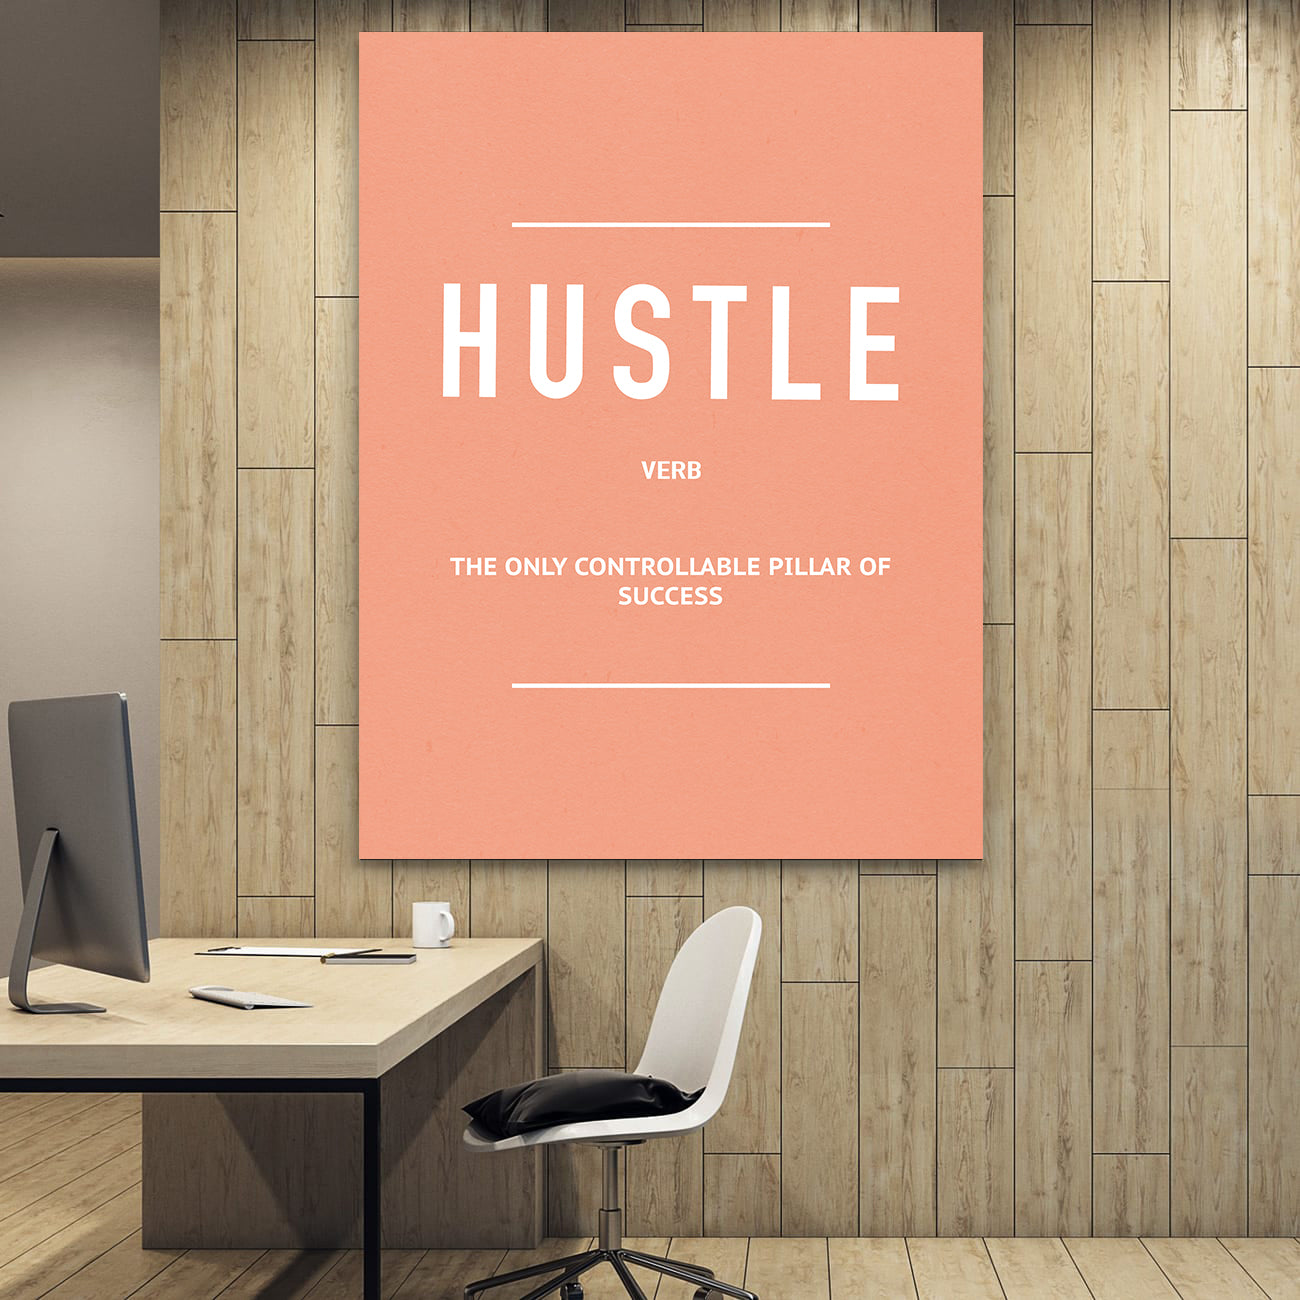 Hustle Verb (Pink)